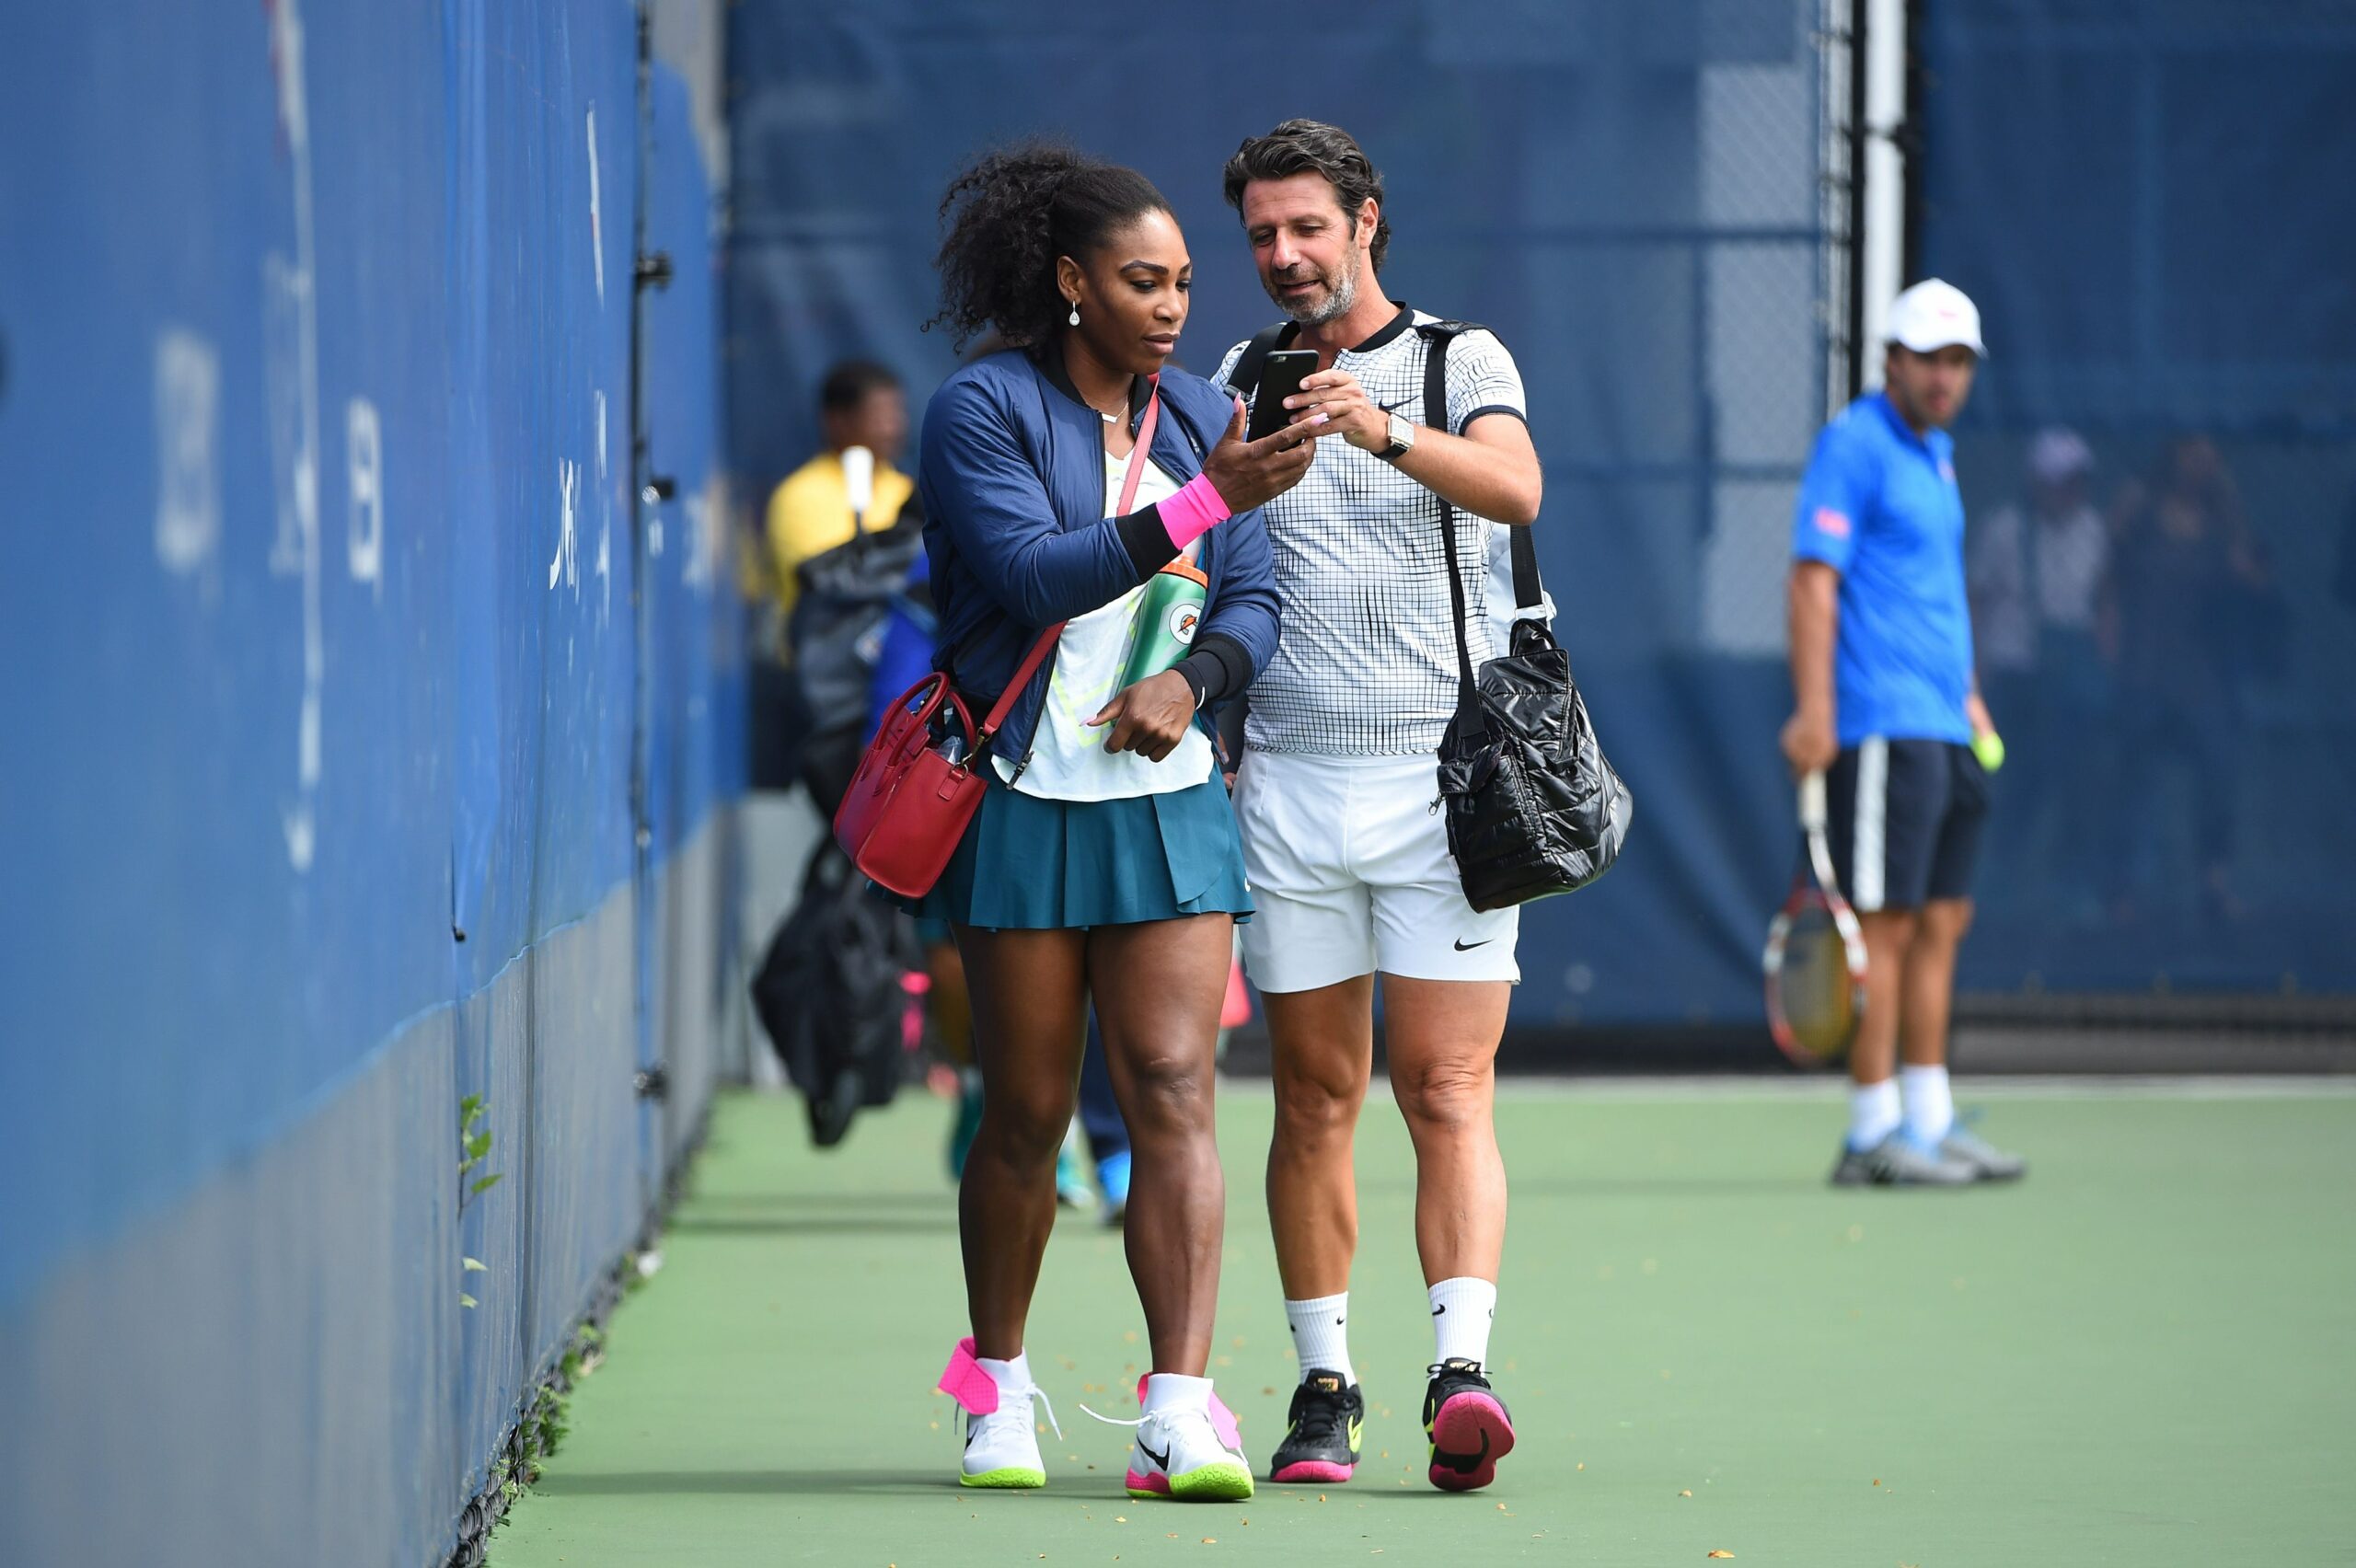 Patrick Mouratoglou alături de Serena Williams, în perioada în care cei doi erau apropiați atât pe teren cât și în afara lui sursă foto: hepta.ro